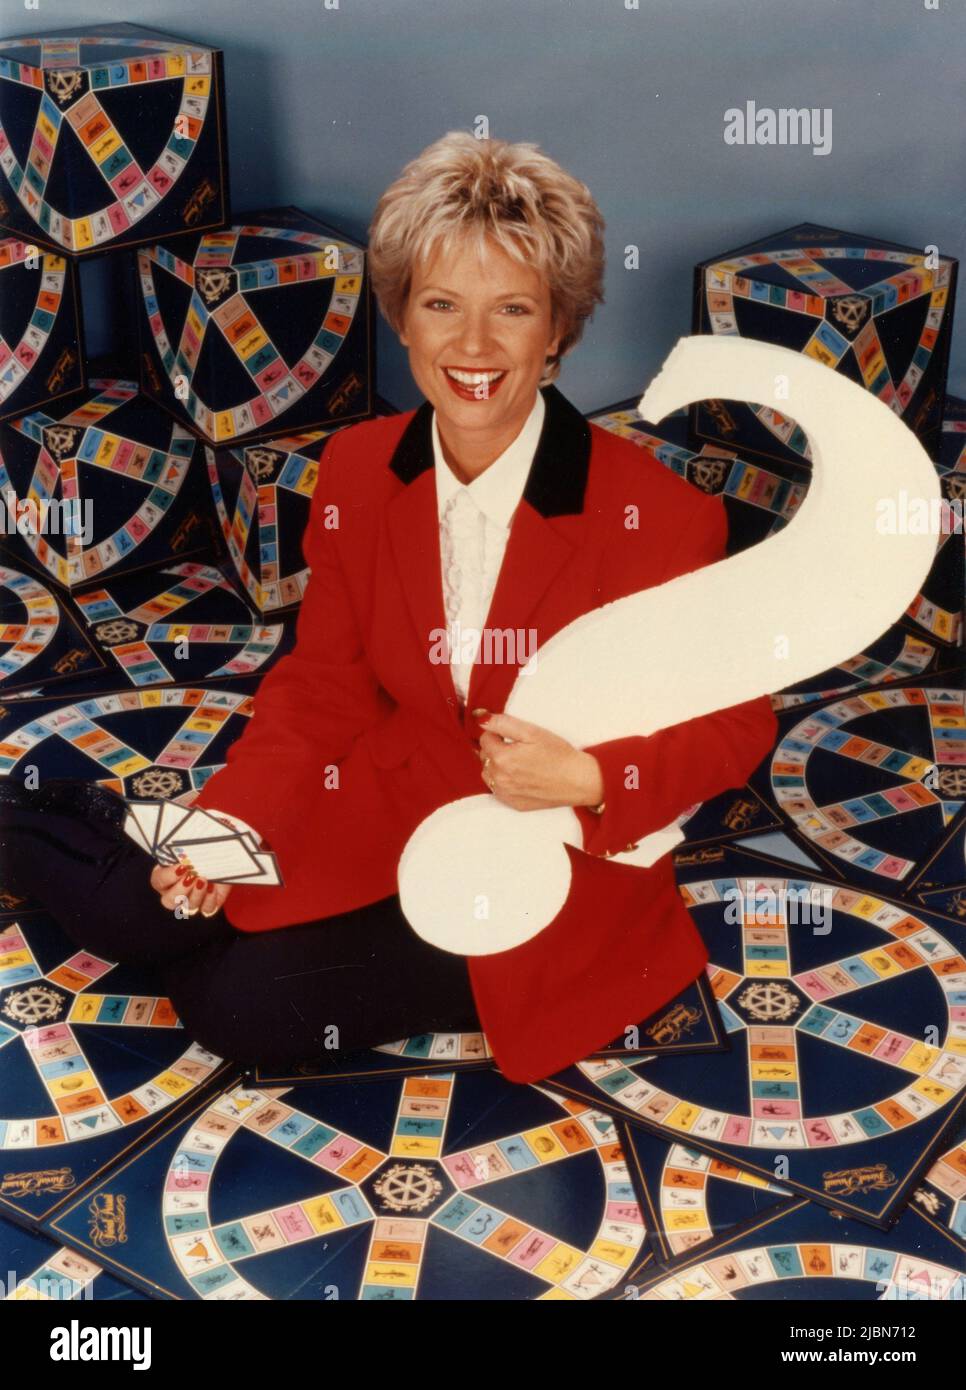 Presentatore televisivo tedesco e moderatore Birgit Biggi Lechtermann nel programma televisivo Trivial Pursuit, Germania 1993 Foto Stock